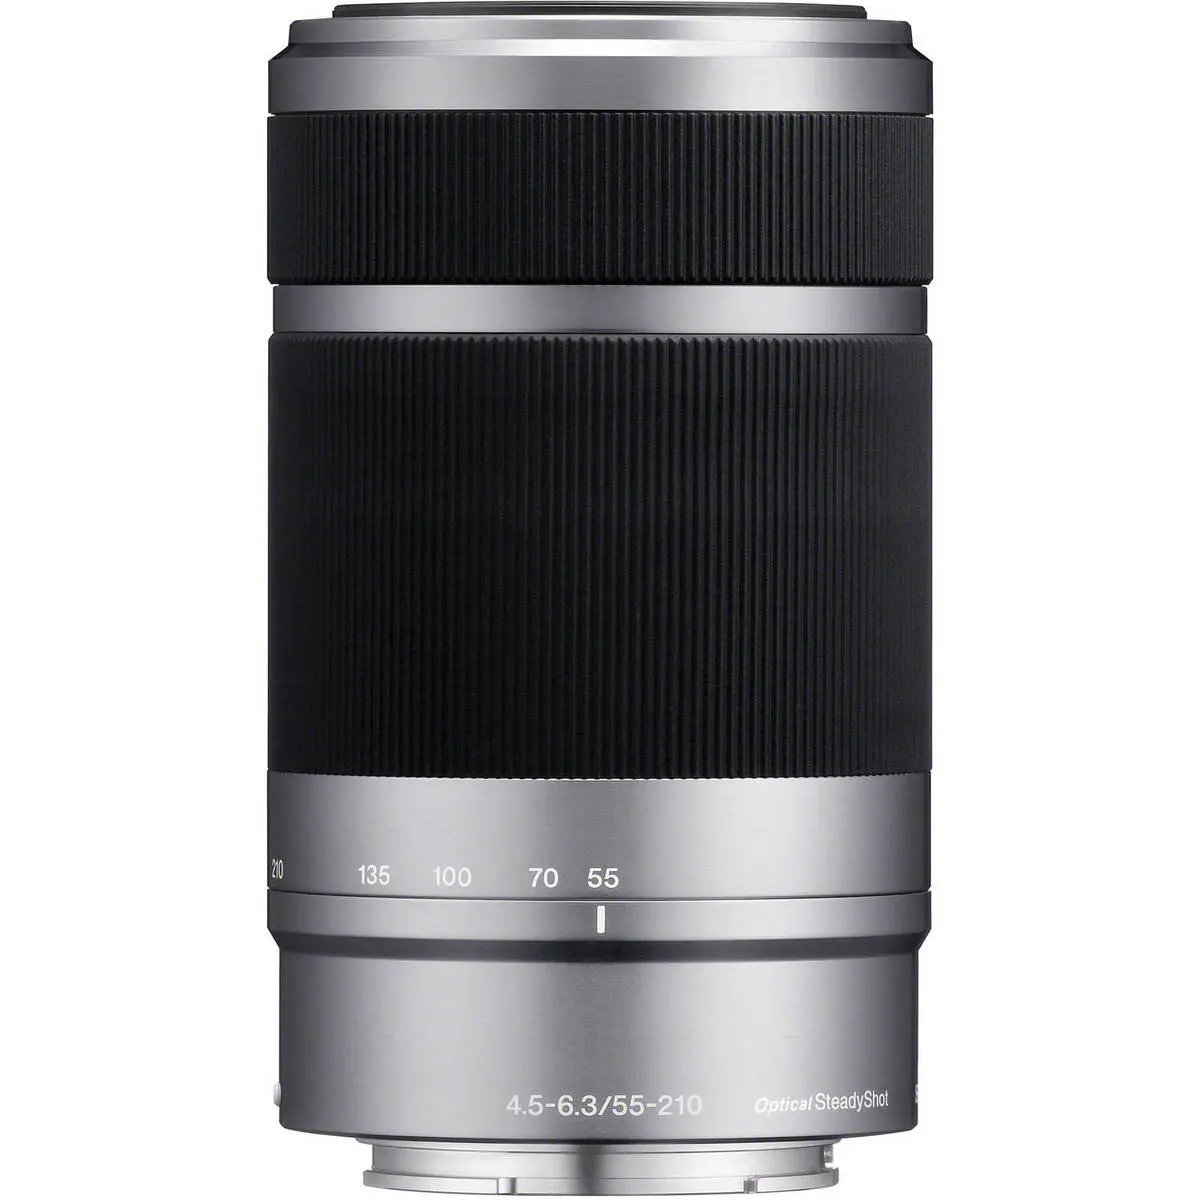 1. Sony E 55-210mm F4.5-6.3 OSS (Silver) Lens